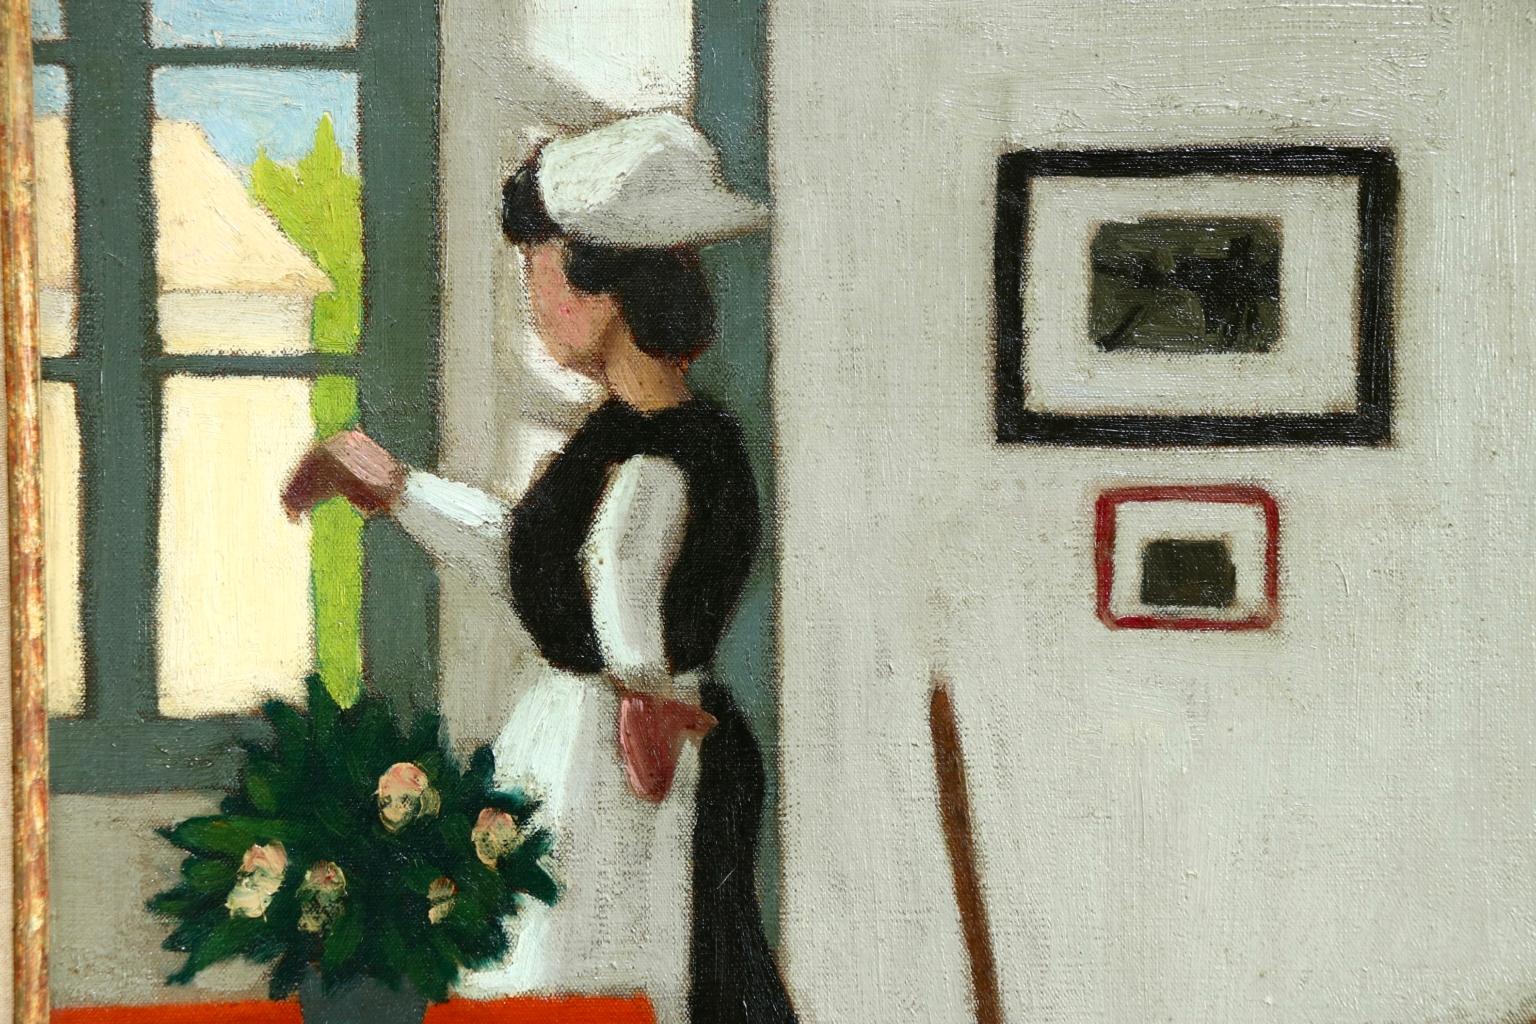 Bonne a la fenetre - Post Impressionist Oil, Figure in Interior by M Borgeaud 1